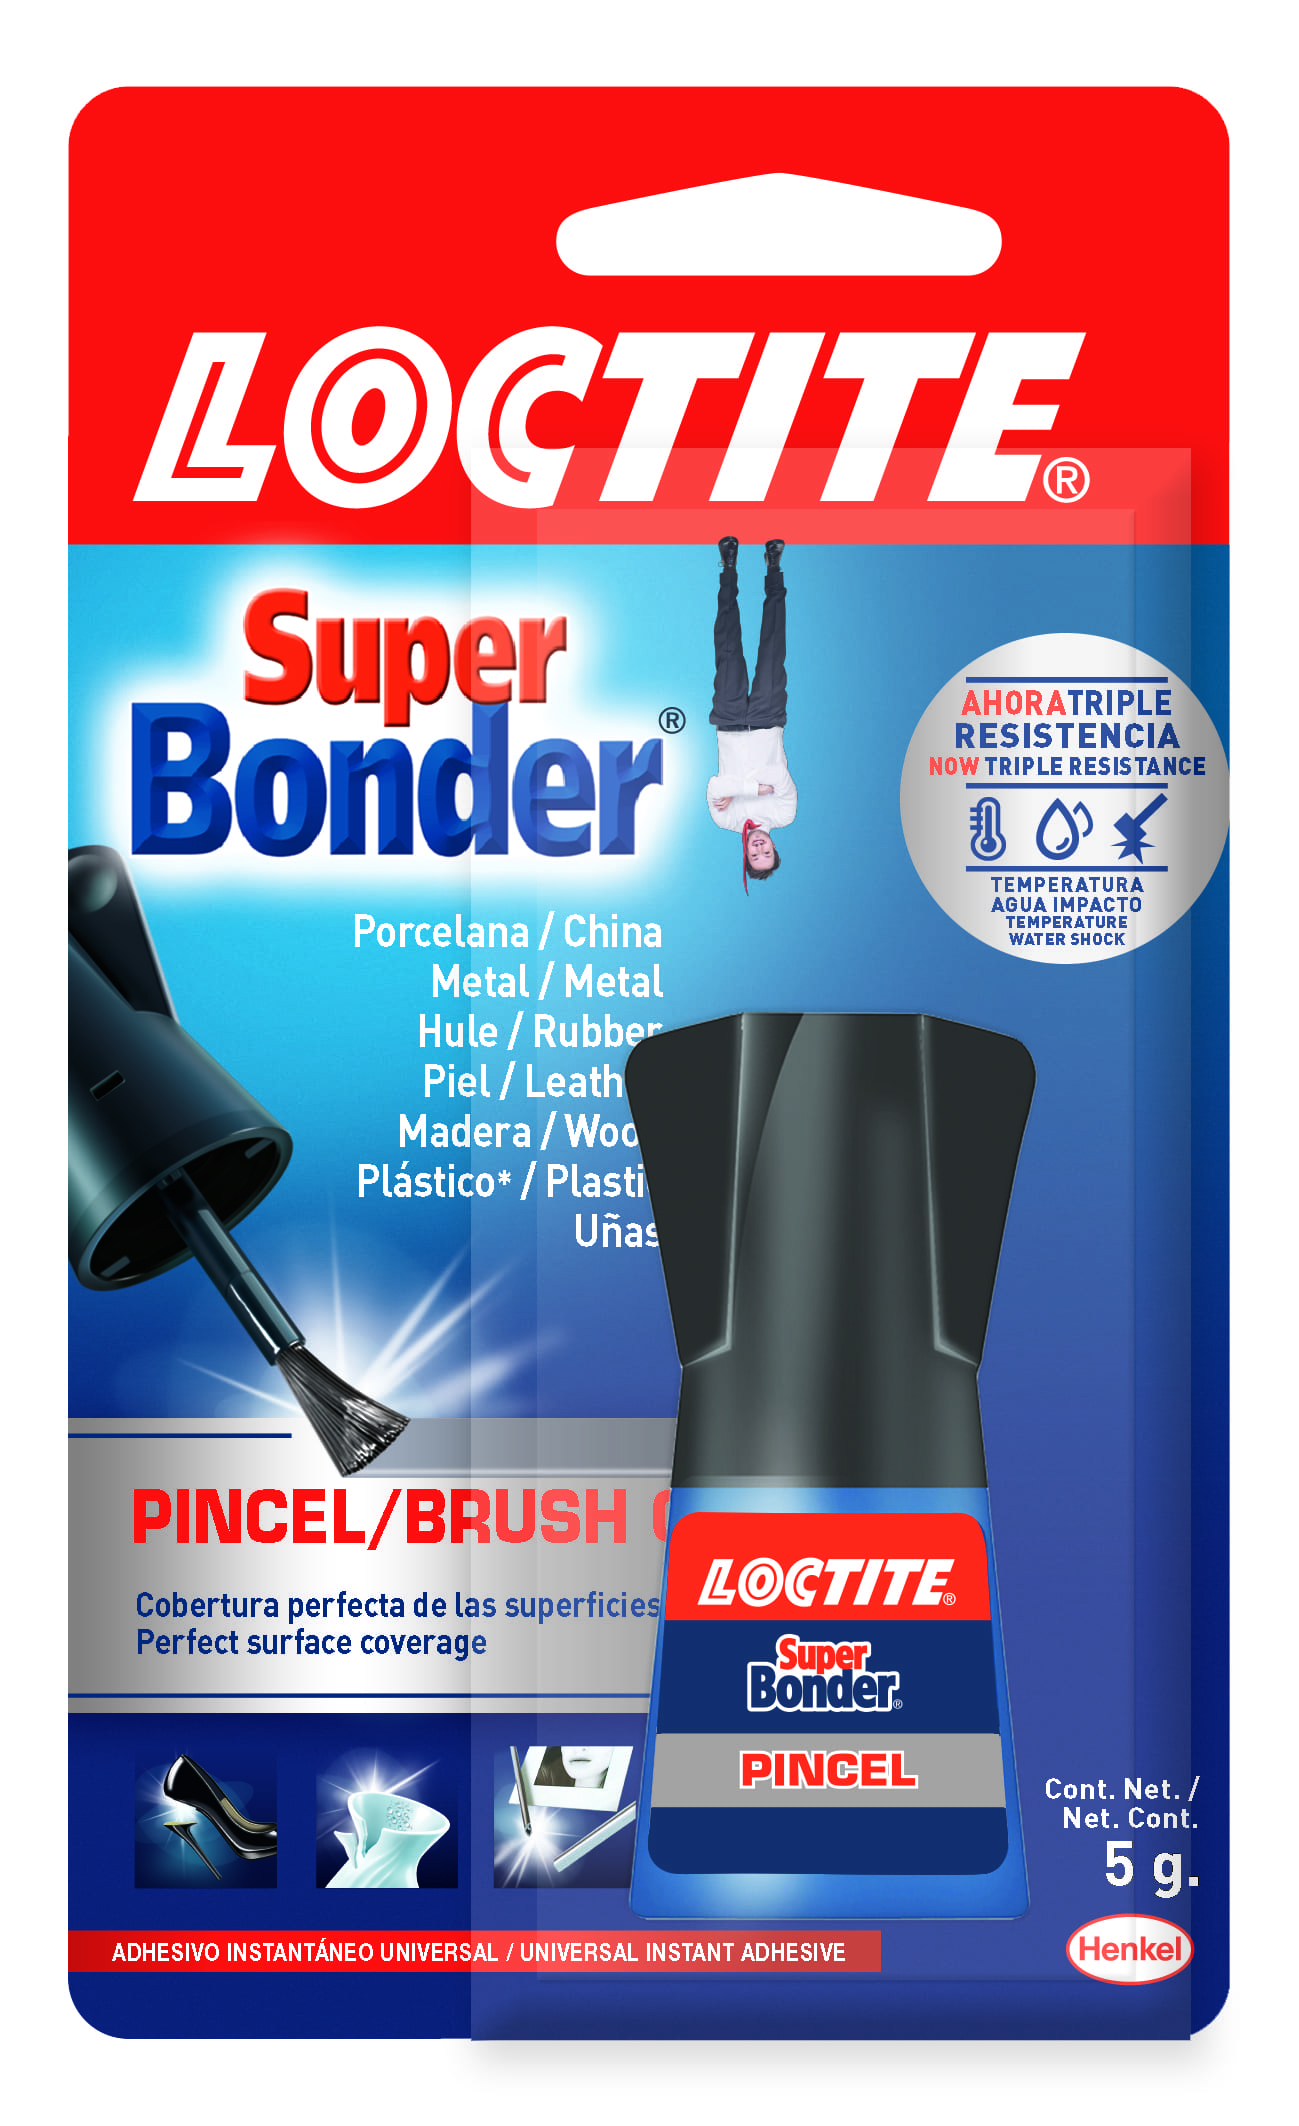 Adhesivo instantaneo 5 gramos Pincel Super Bonder Loctite